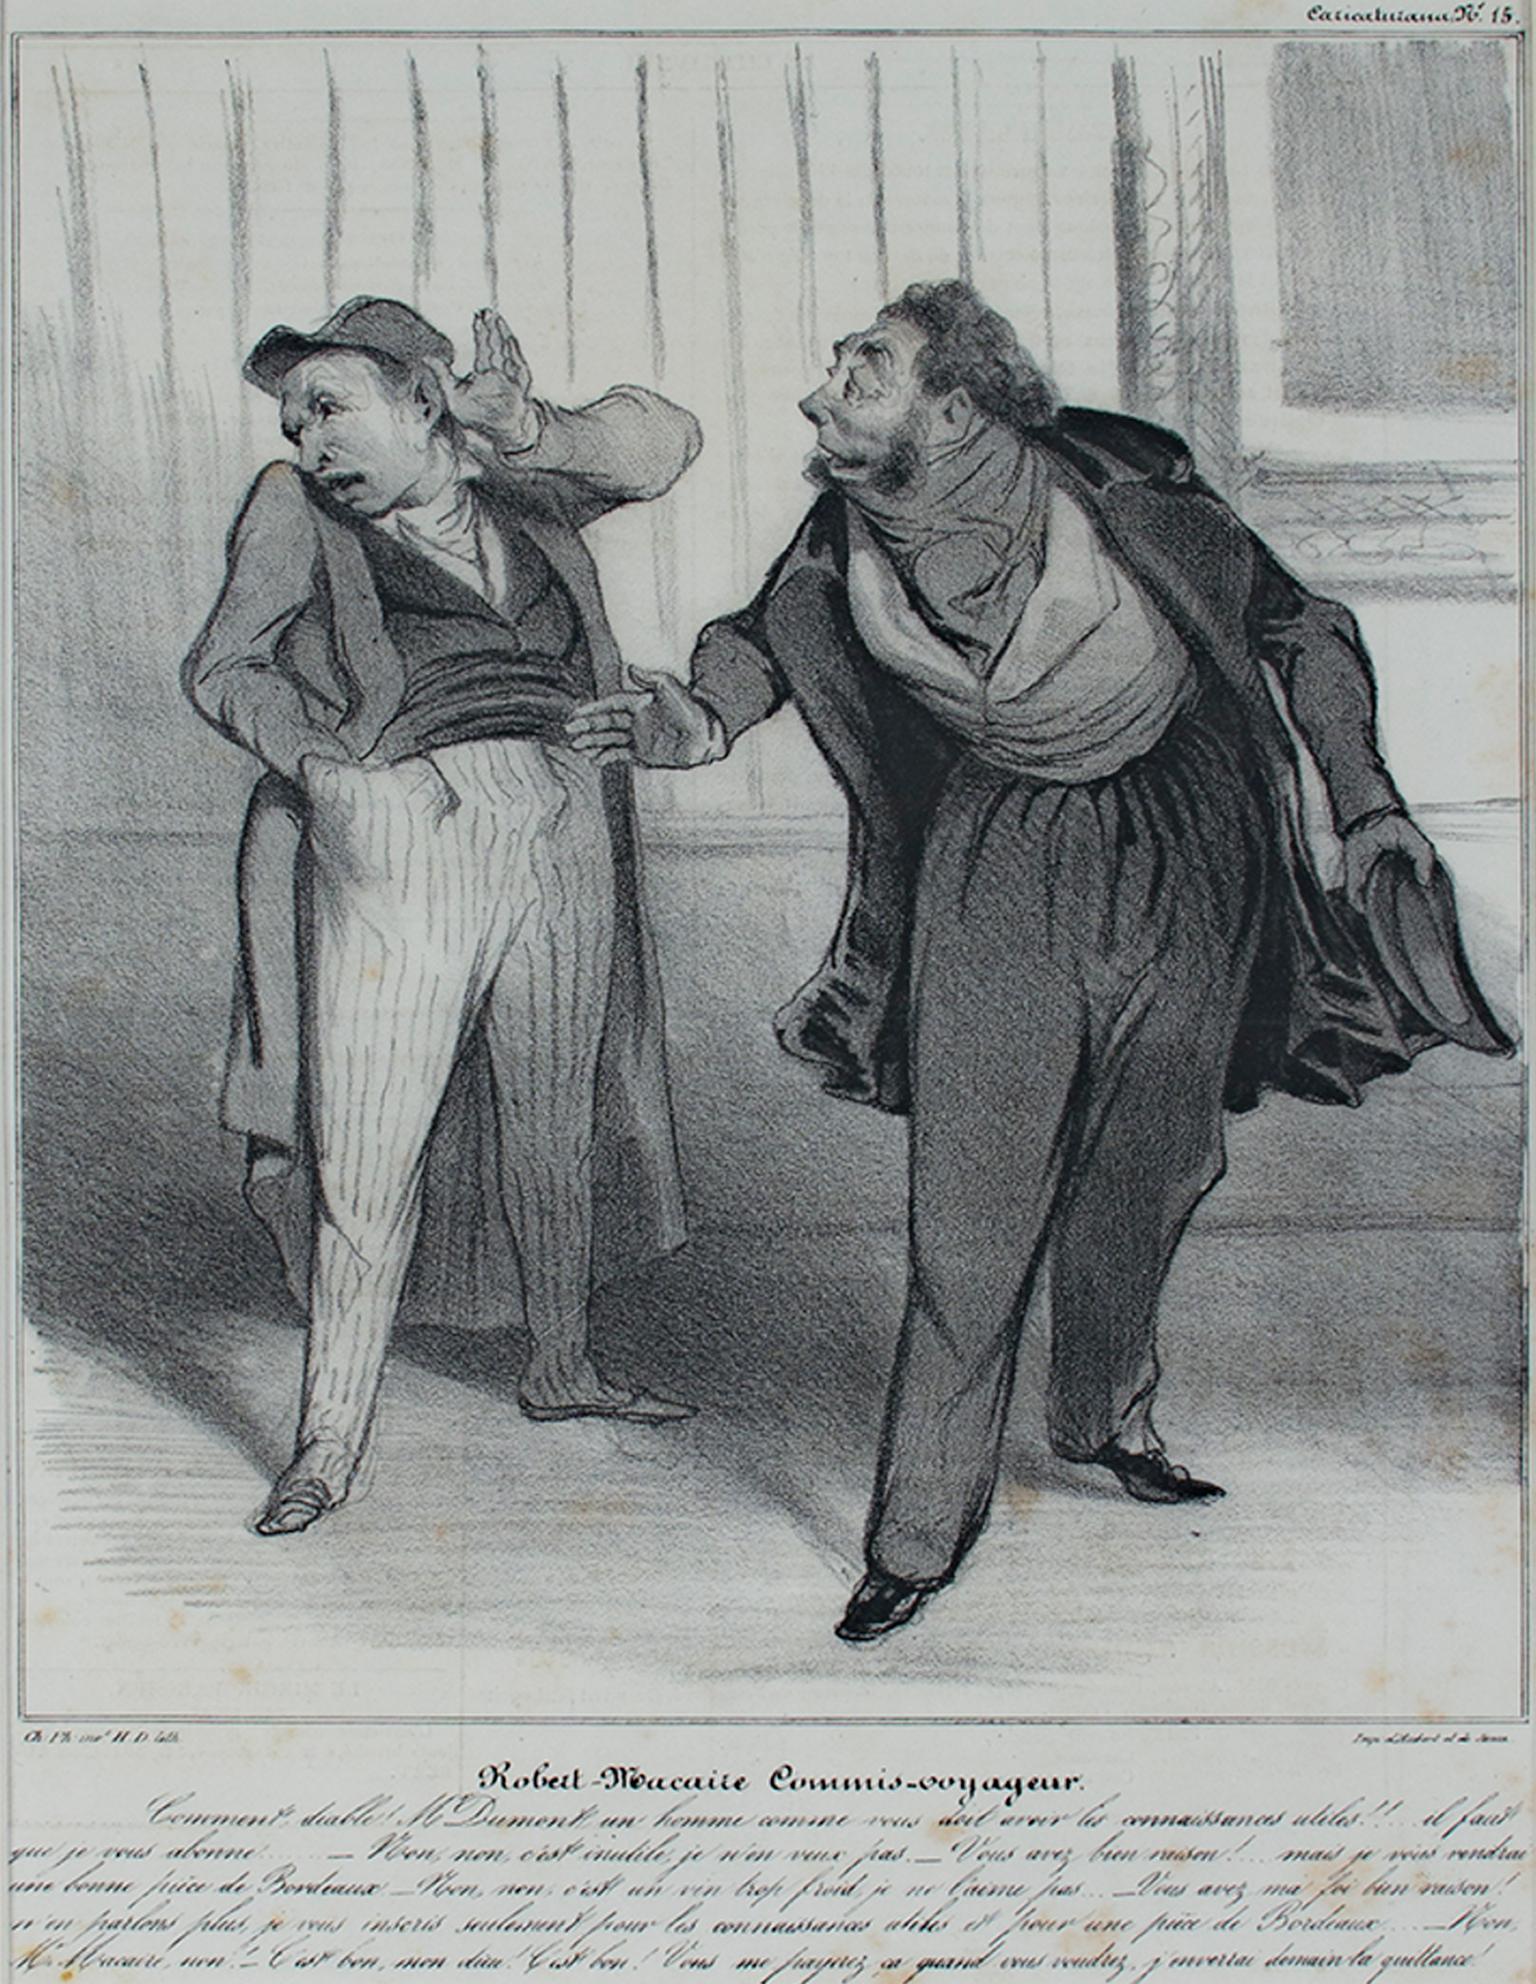 Honoré Daumier Print – „Robert Macaire Commis Voyageur“, Originallithographie von Honore Daumier, „Robert Macaire